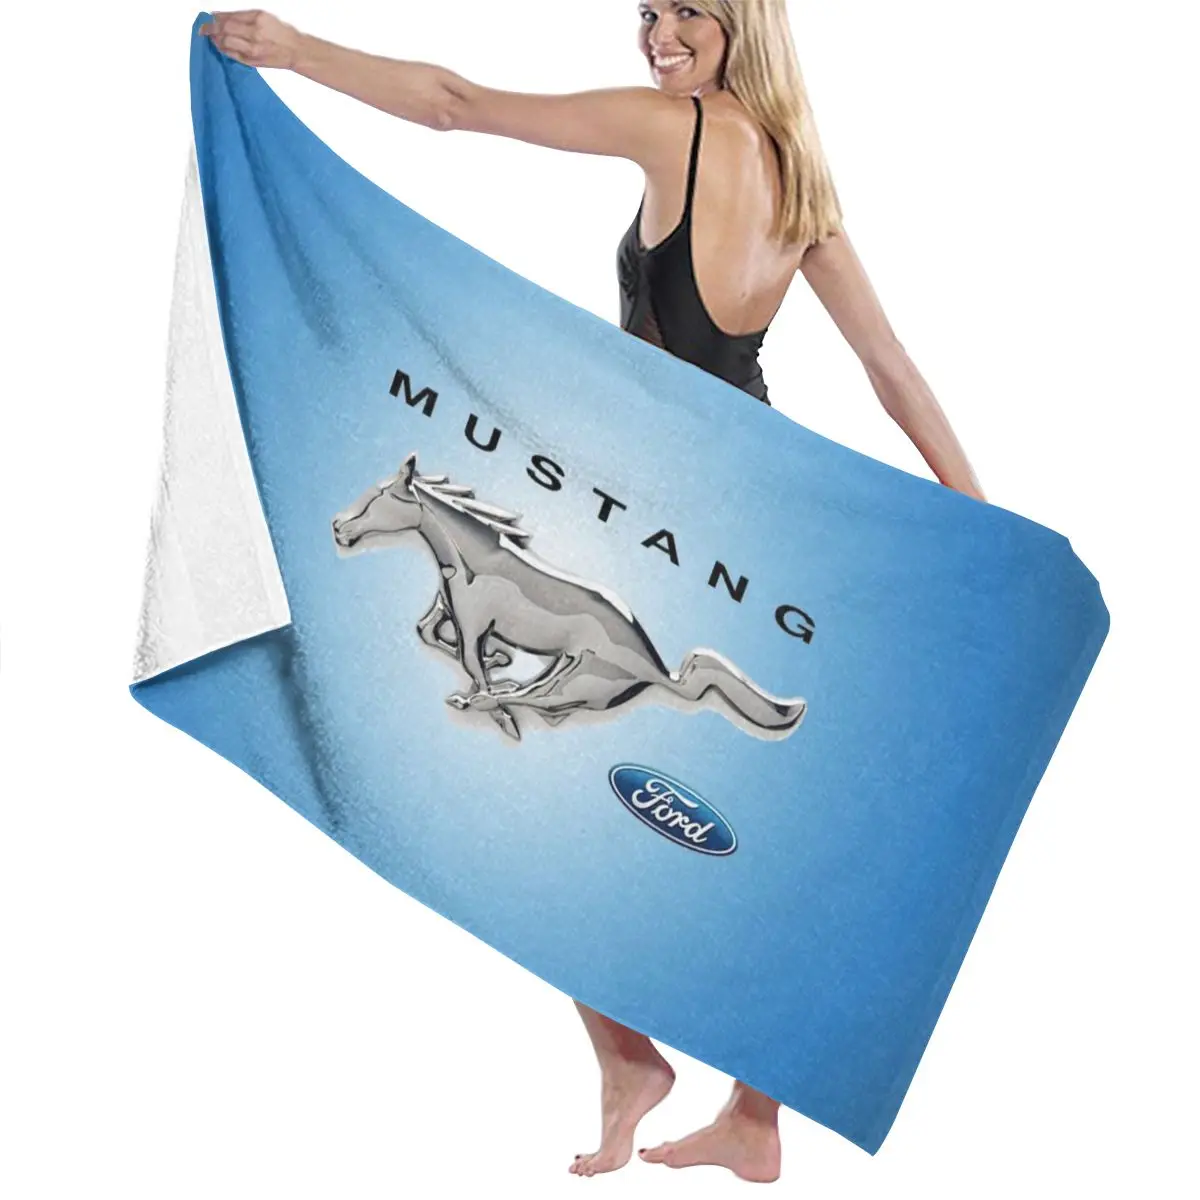 Mustang-Toalla de tela de microfibra para adultos, accesorio textil absorbente para el baño, color gris, para carreras y natación, 130x80